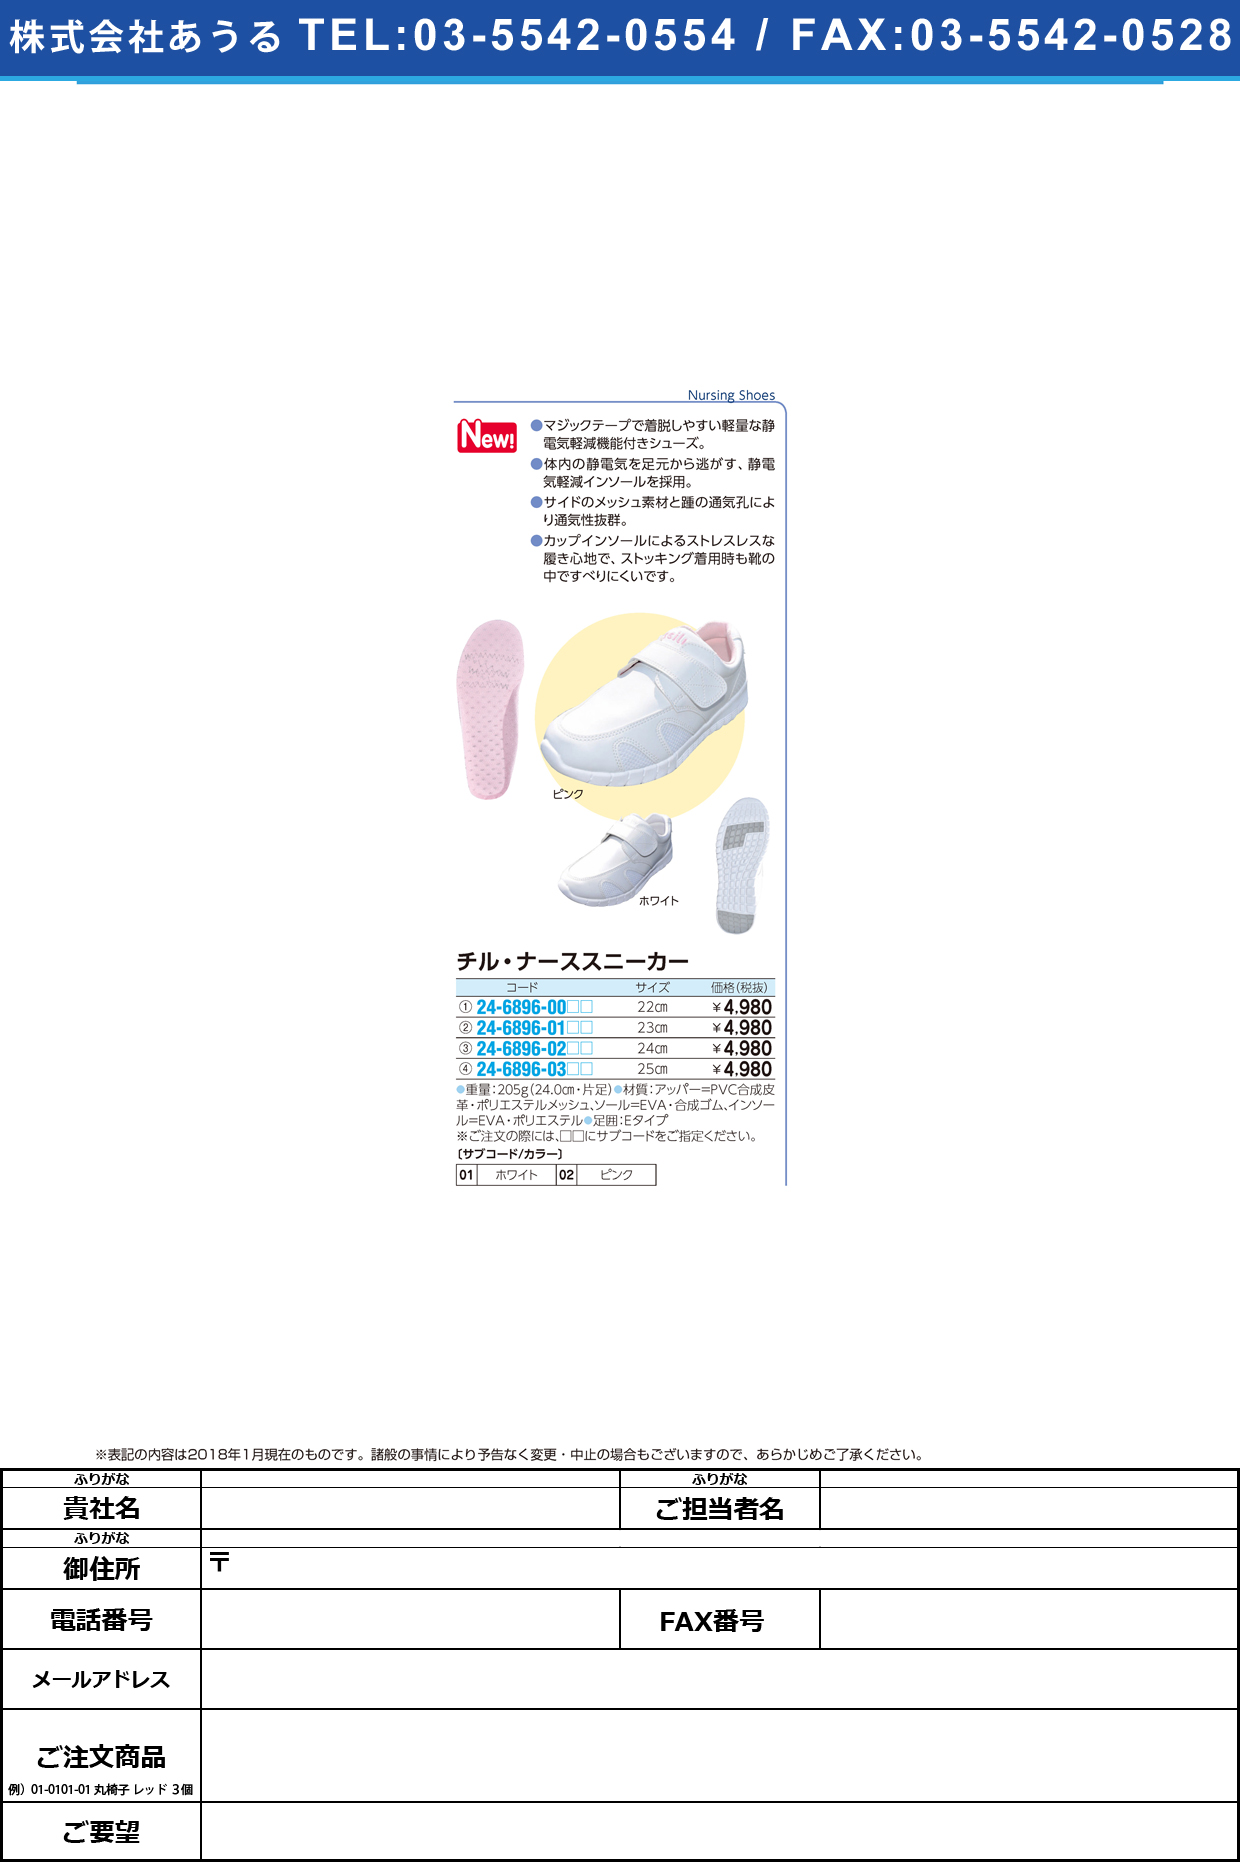 (24-6896-00)チル・ナーススニーカー 22.0CM ﾁﾙﾅｰｽｽﾆｰｶｰ ホワイト【1足単位】【2018年カタログ商品】